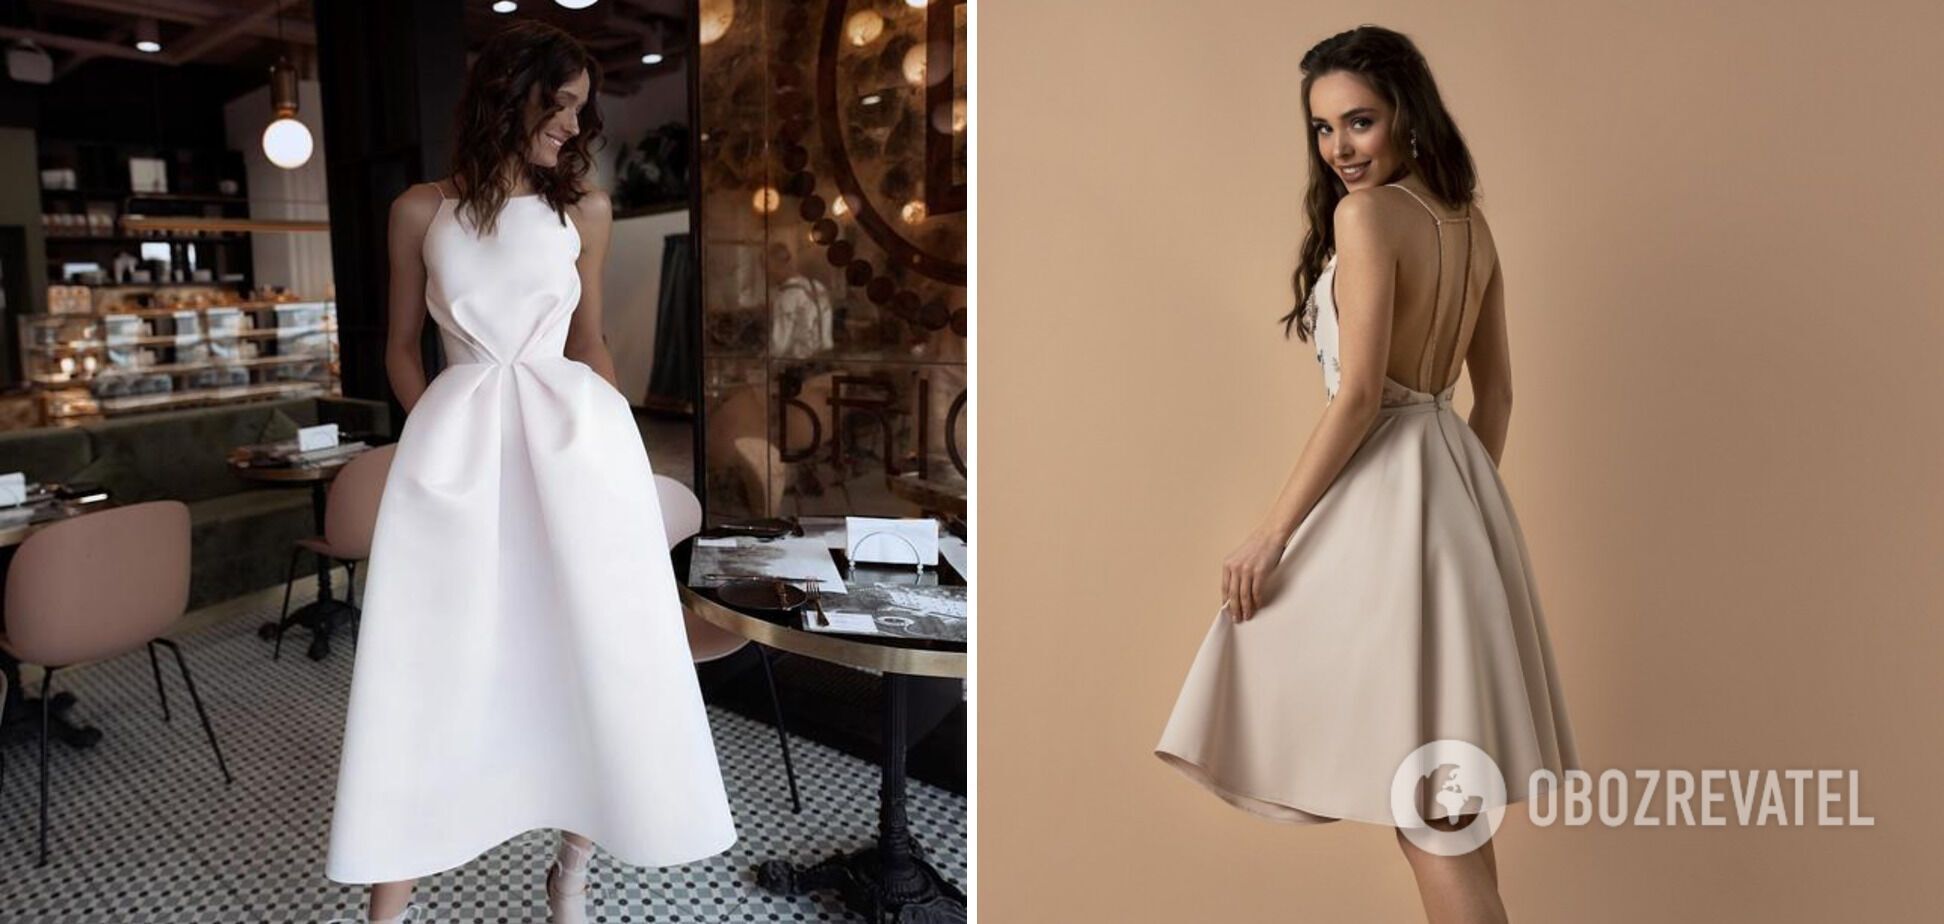 Мінімалістична біла сукня довжини міді пасуватиме будь-якій фігурі